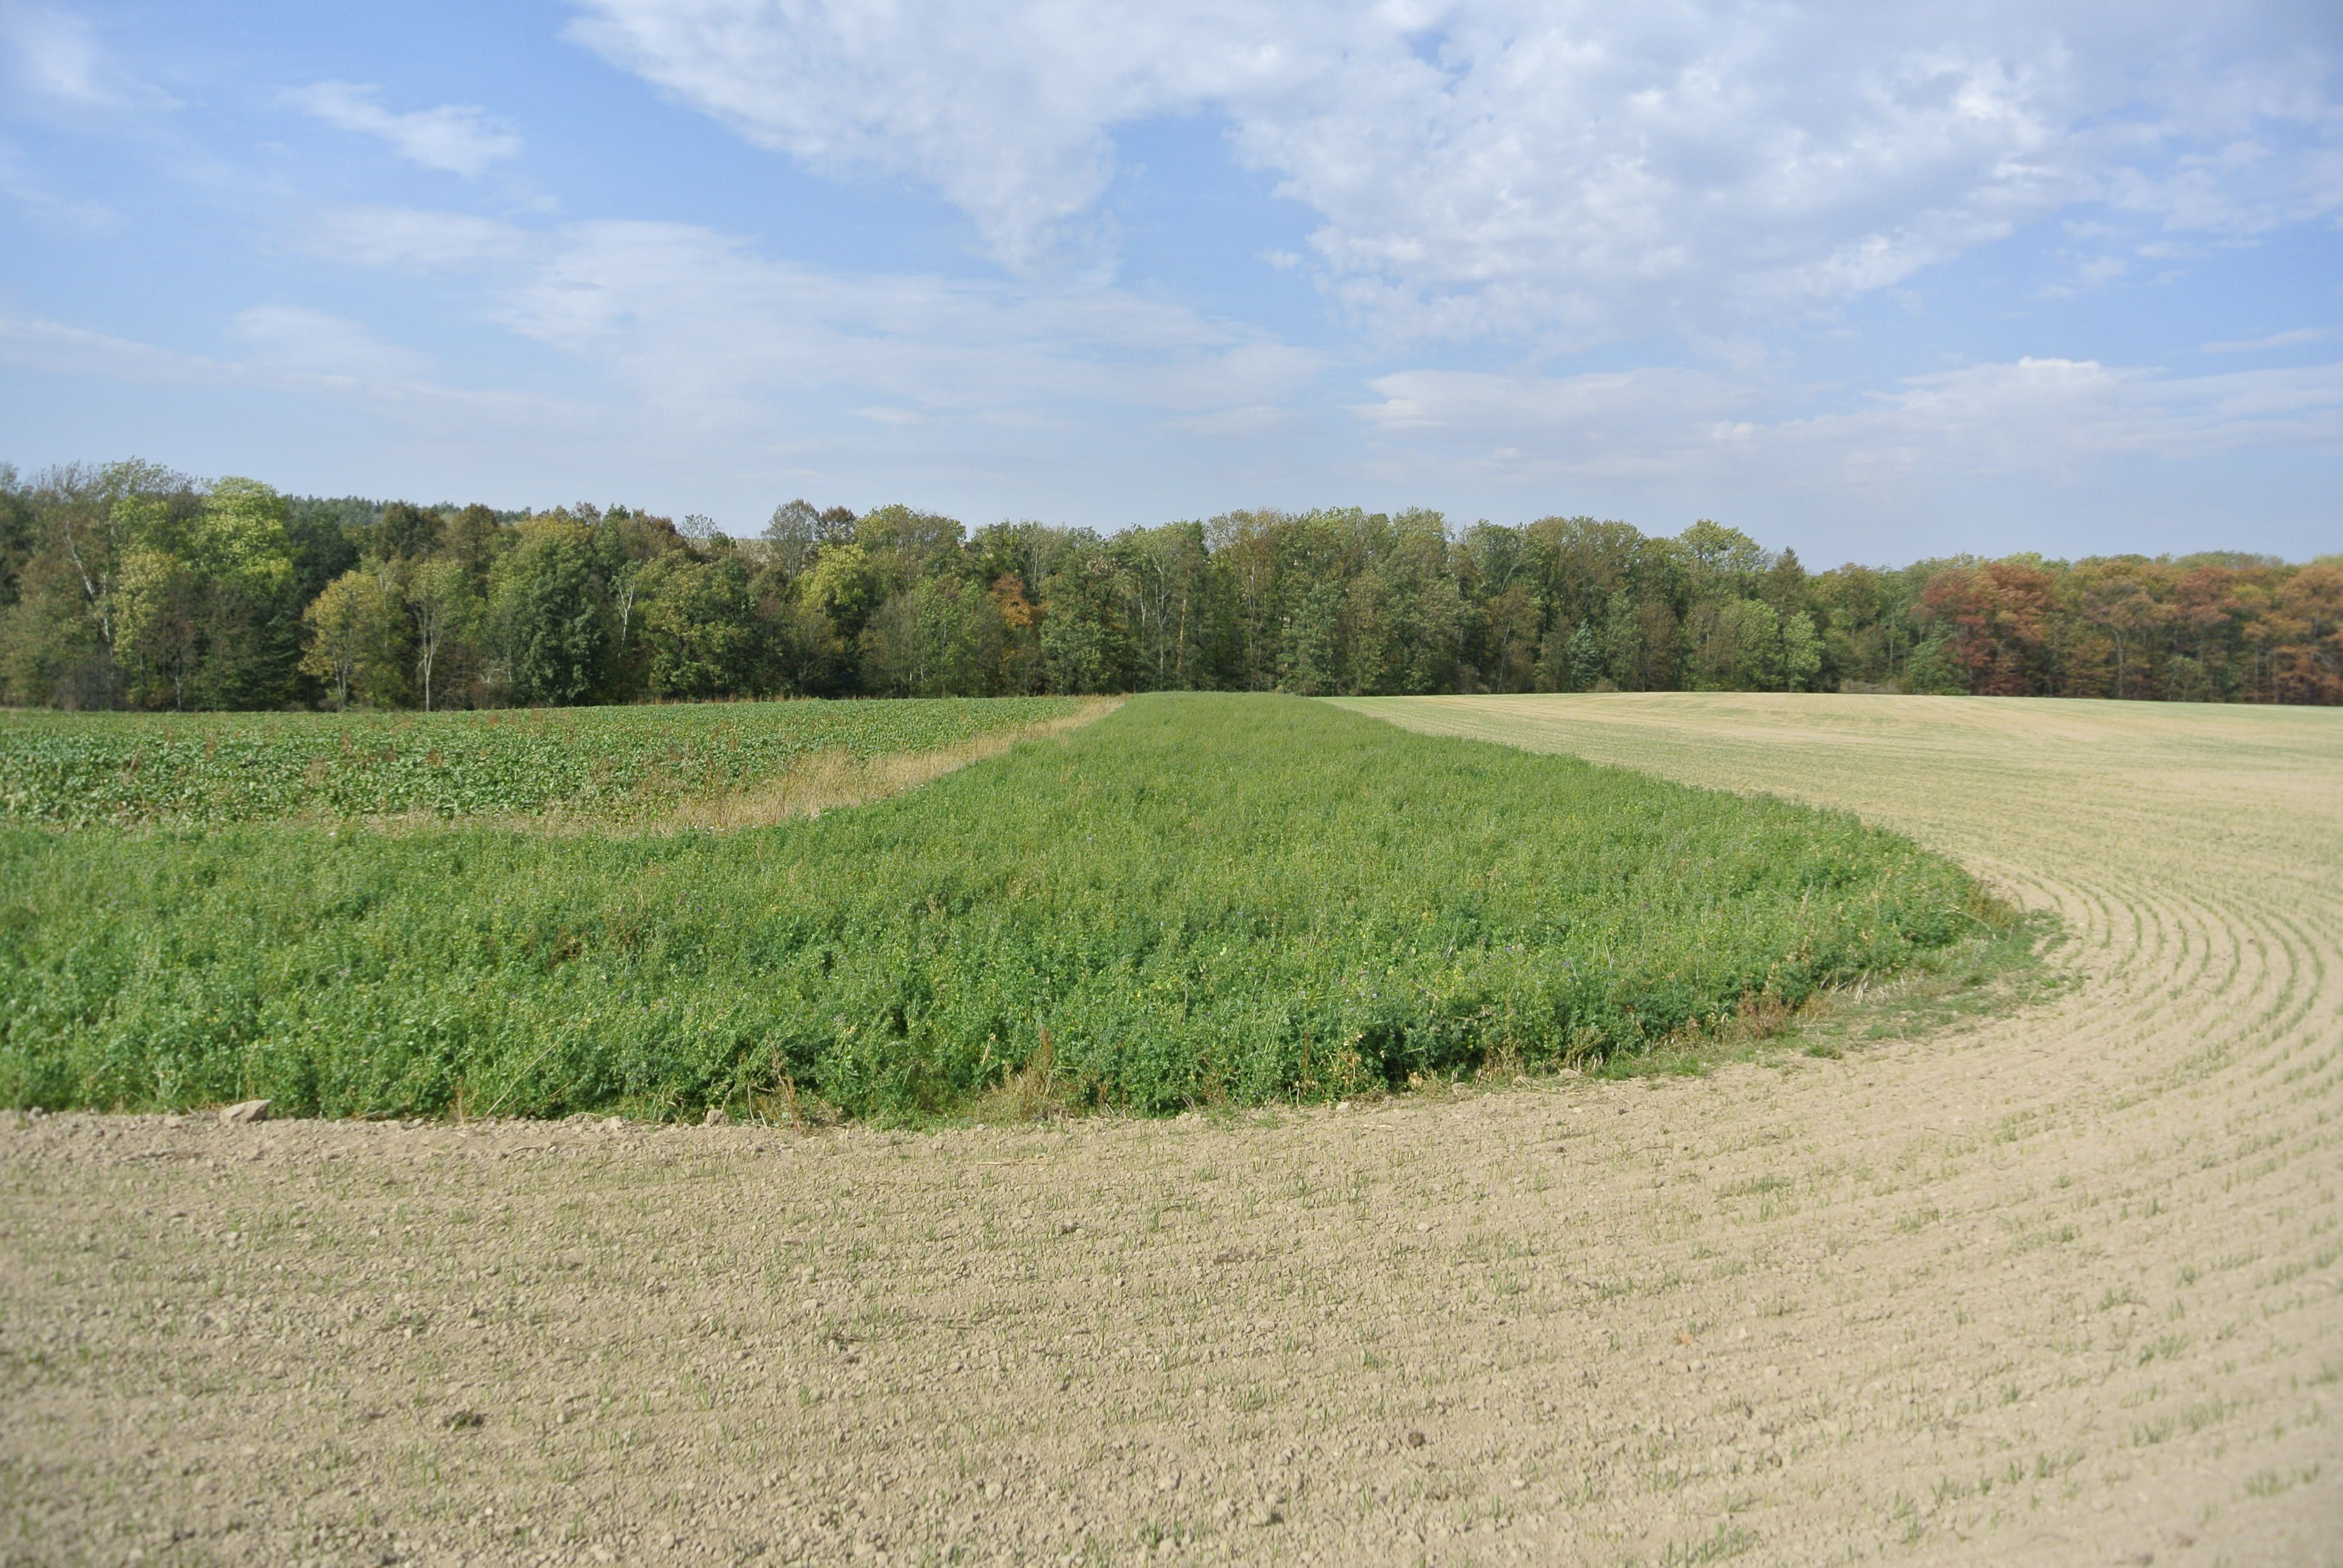 Nektarodárné biopásy zemědělci v roce 2019 aplikovaly jen na zhruba 1000 ha. Foto Václav Zámečník